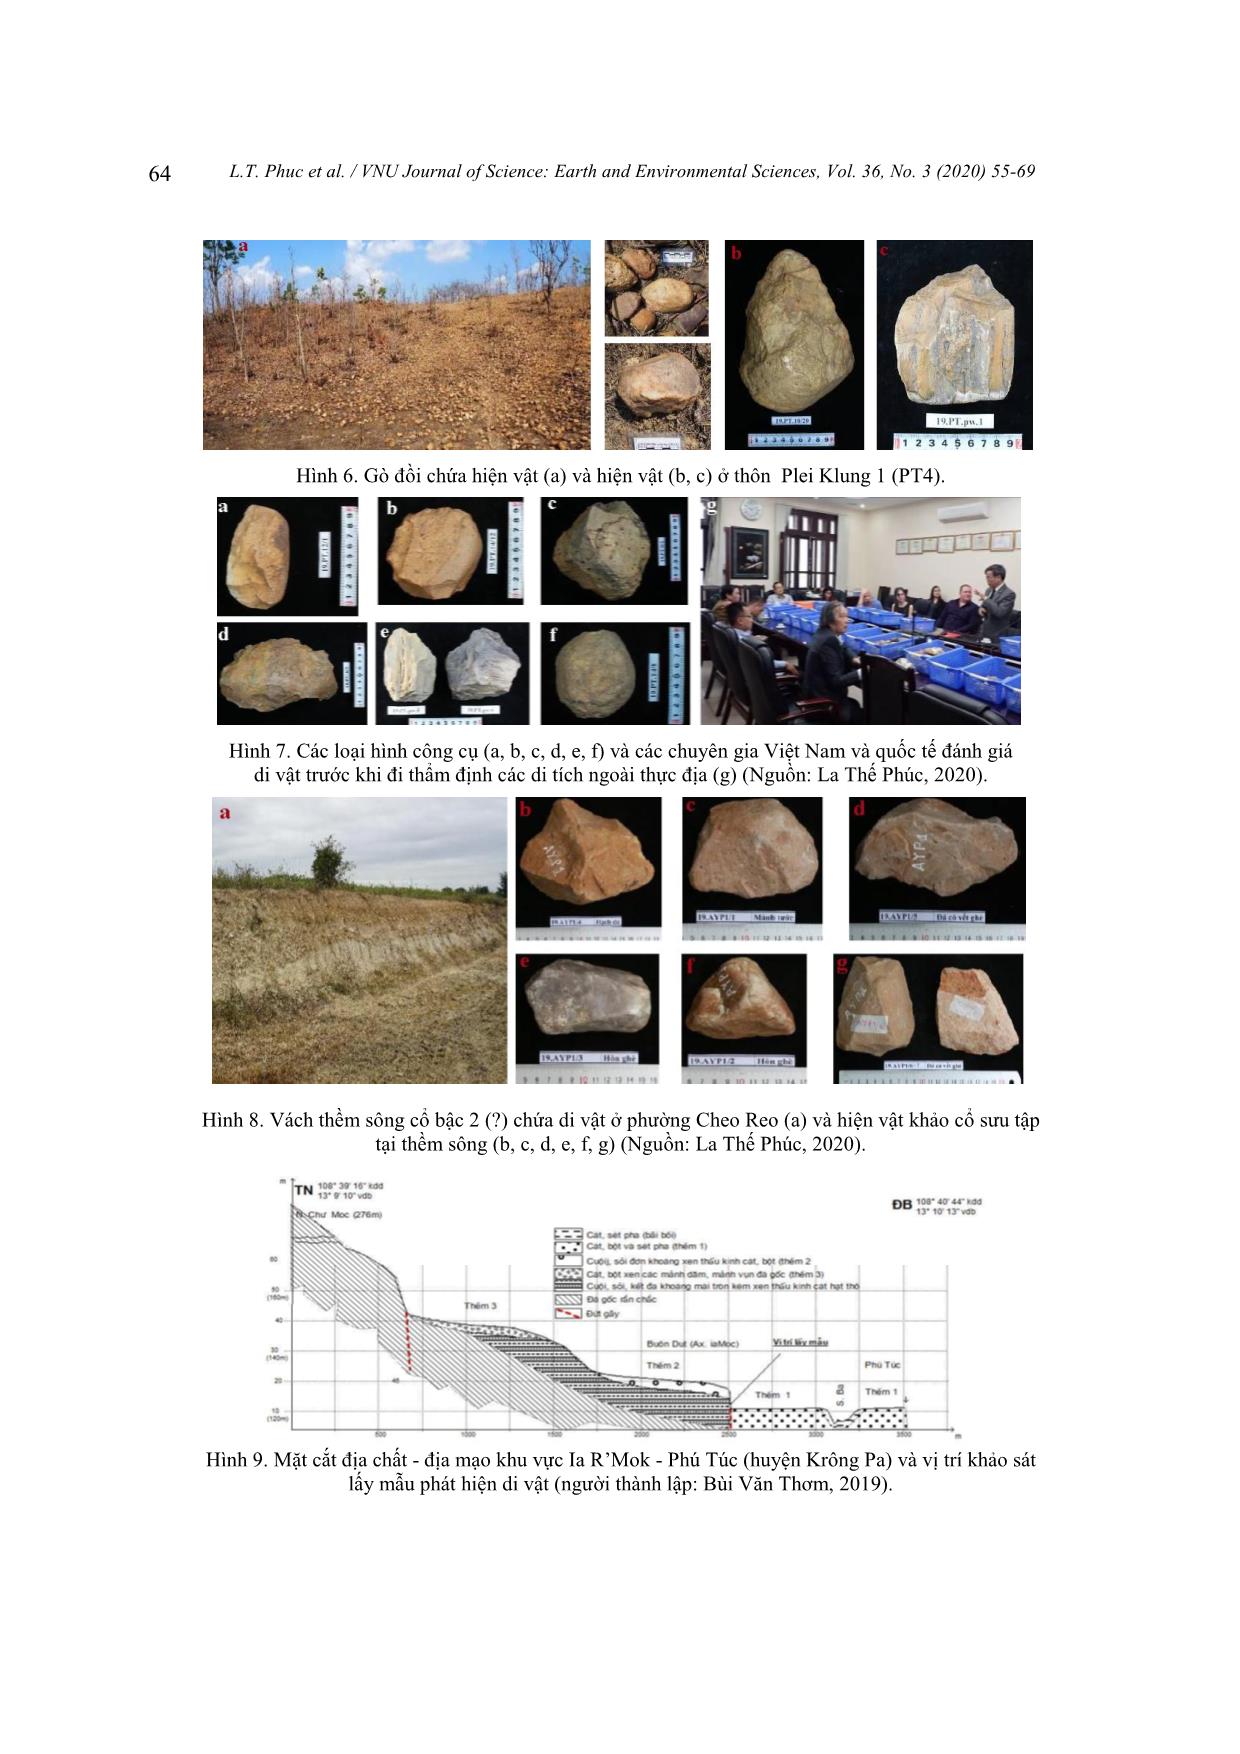 Một số phát hiện mới về di tích khảo cổ trong các thành tạo và di sản địa chất dọc thung lũng cổ sông Ba trang 10